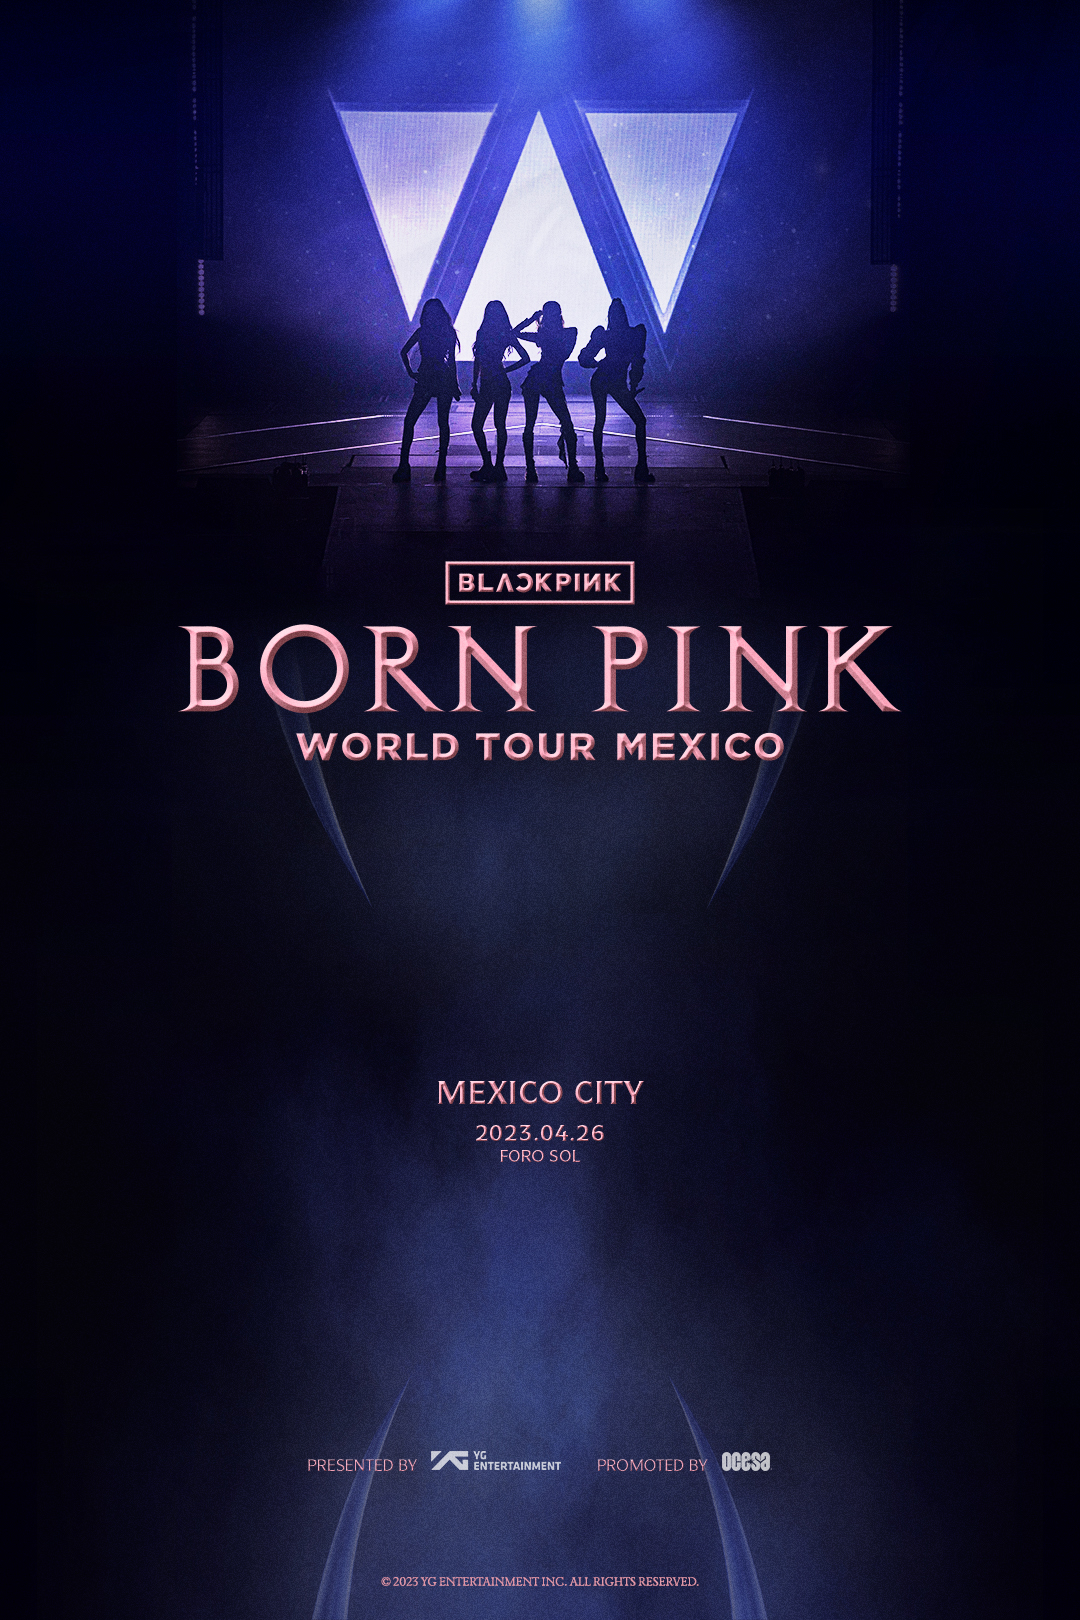 ¡Blackpink anuncia concierto en la Ciudad de México! Gamer Style